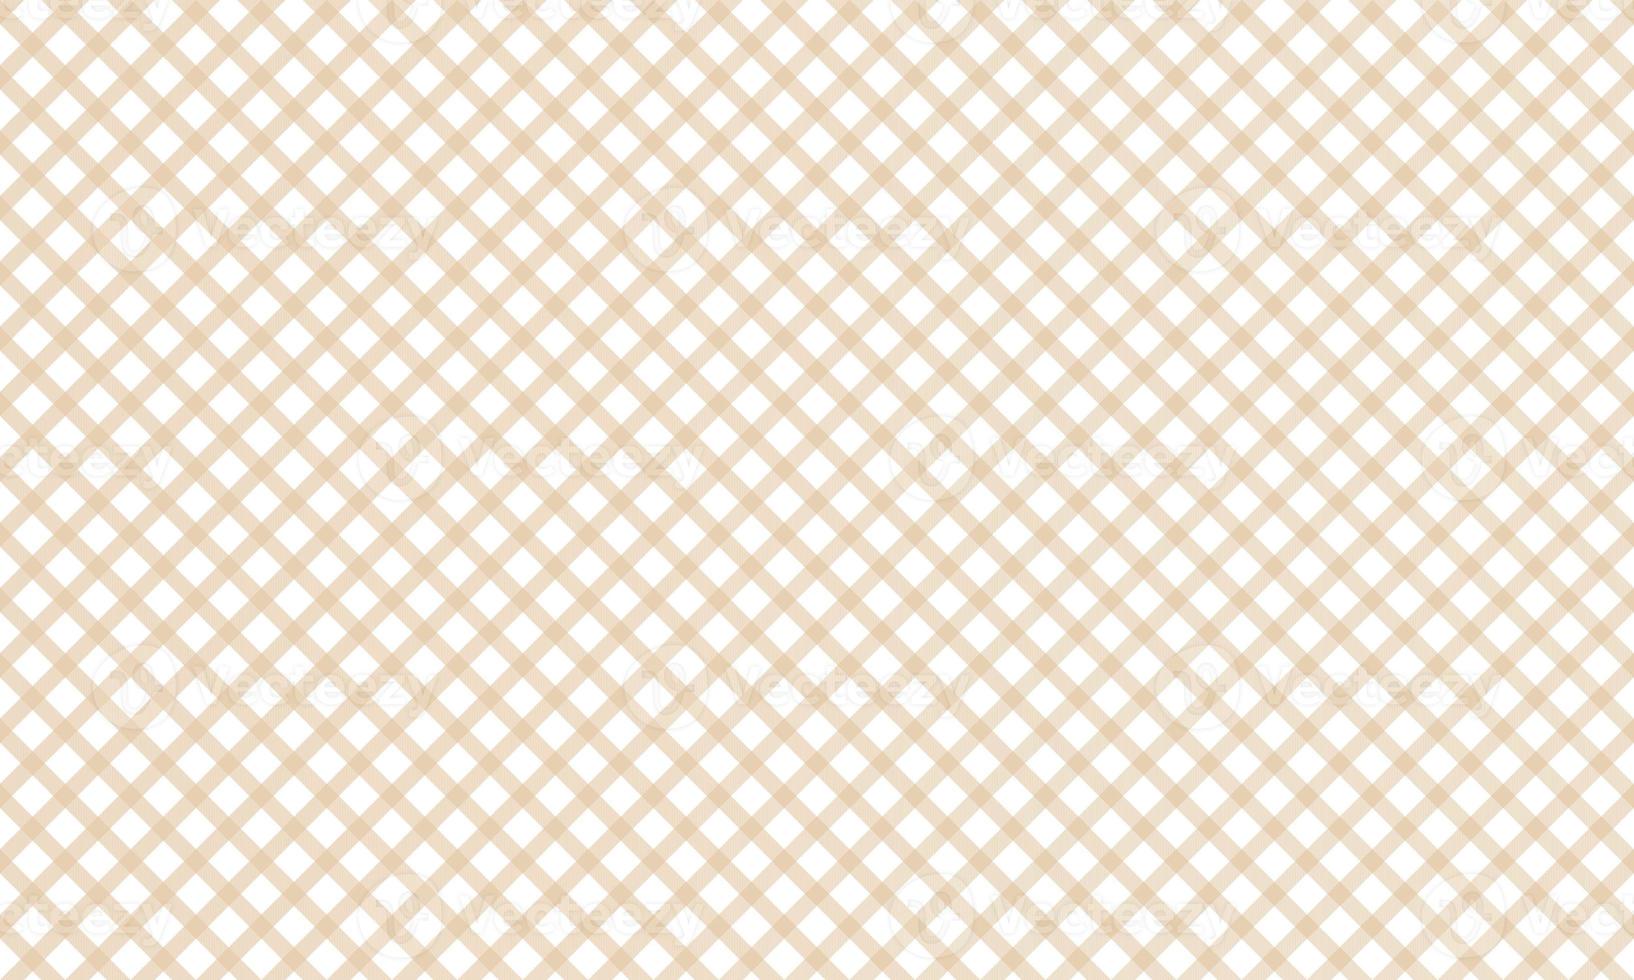 Yellow seamless plaid pattern photo